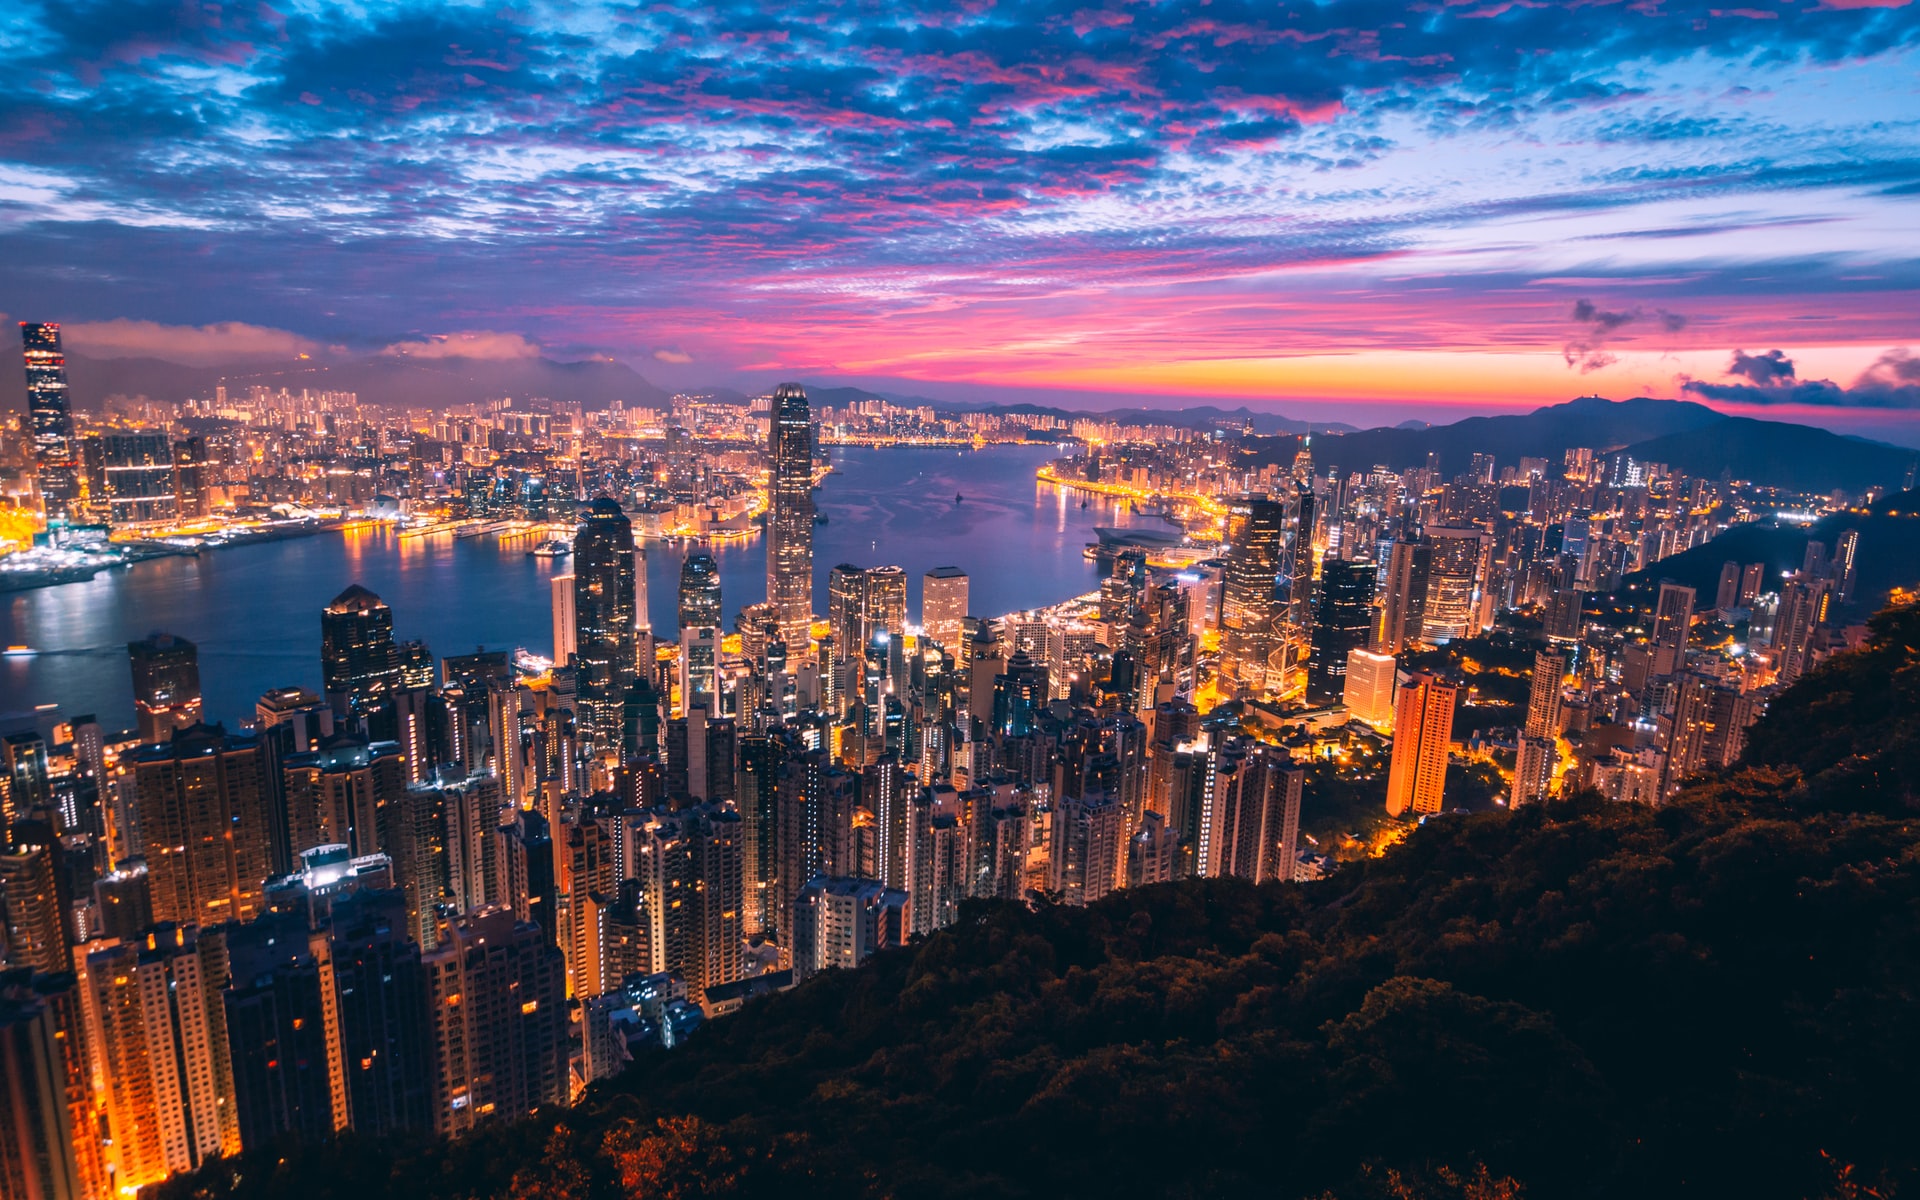 Beautiful nighttime view of Hong Kong